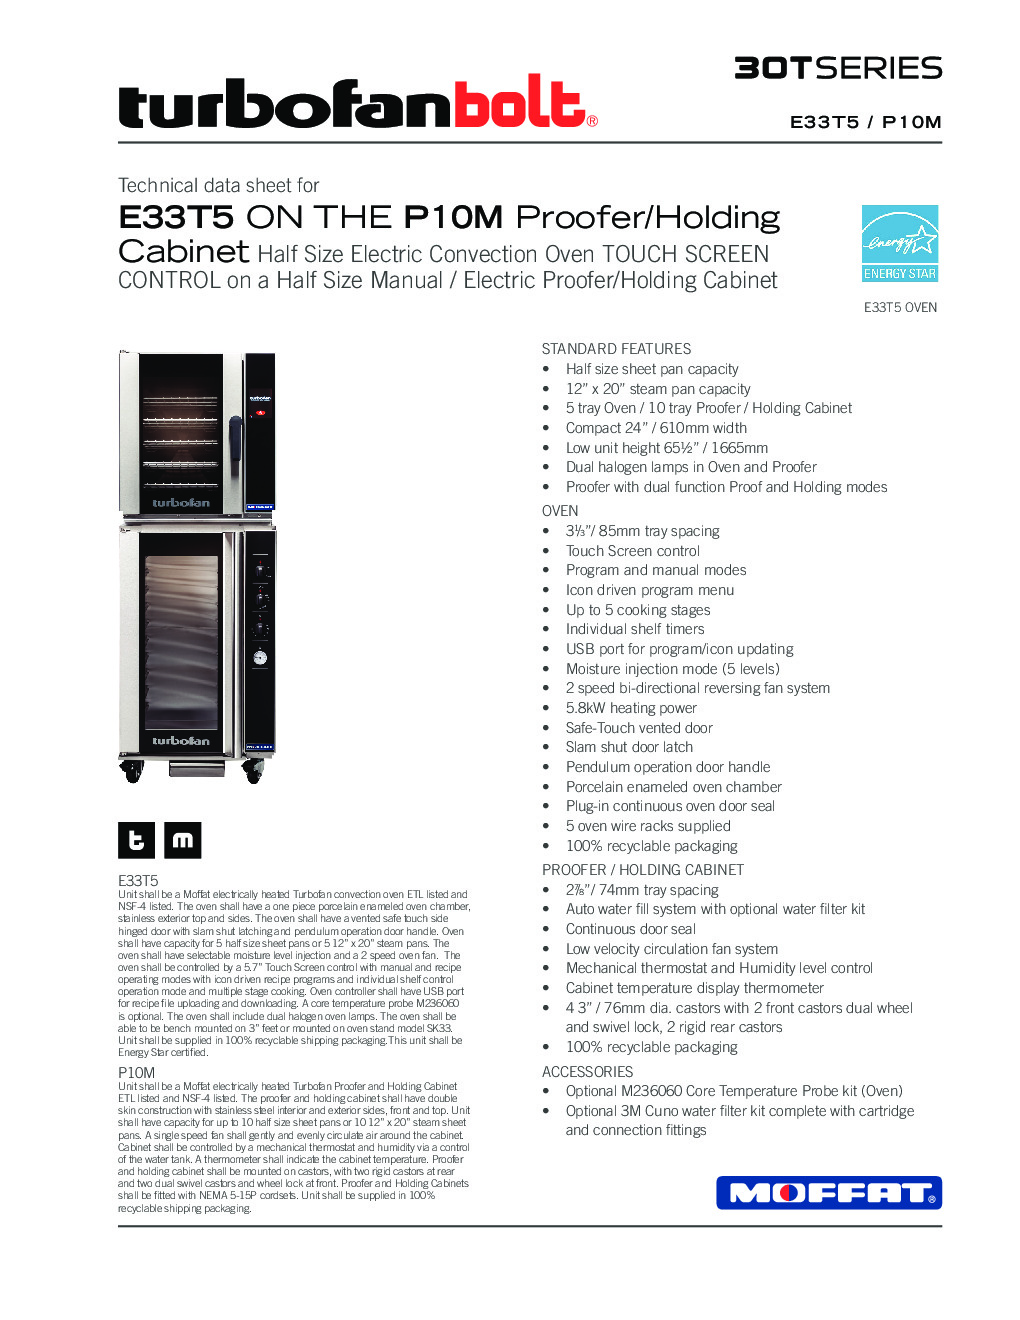 Moffat E33T5/P10M Electric Convection Oven